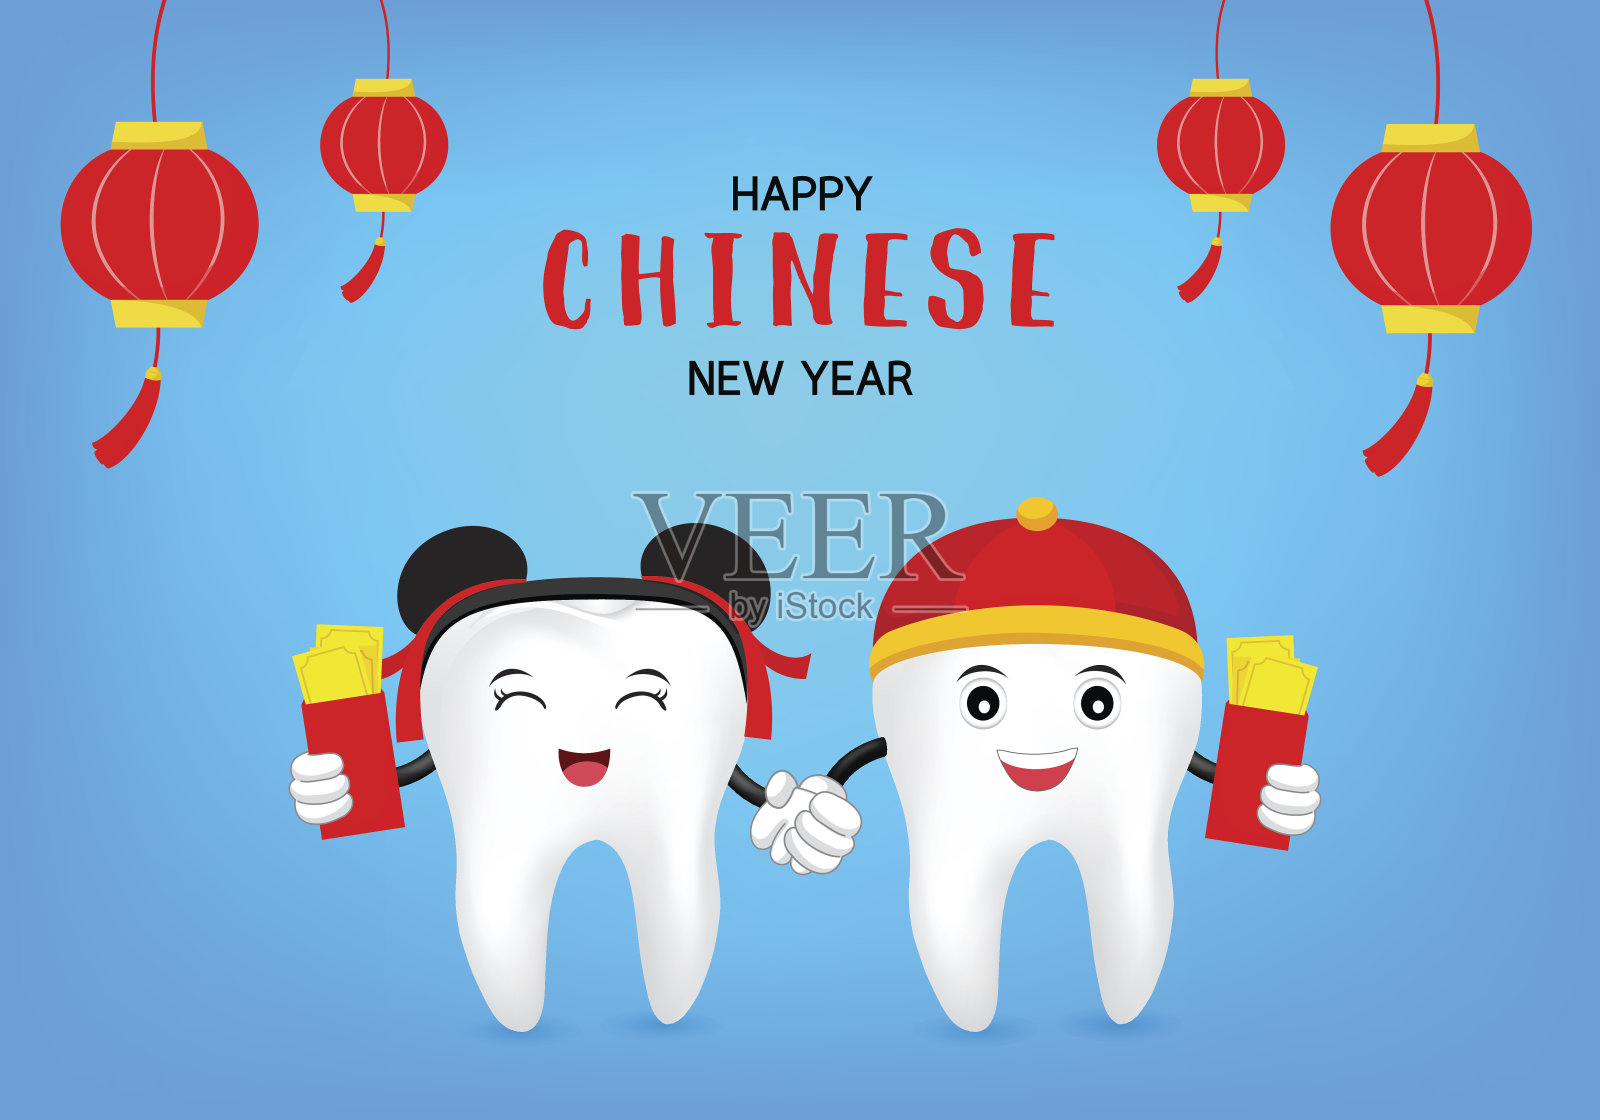 可爱的卡通牙齿与中国新年元素。插画图片素材